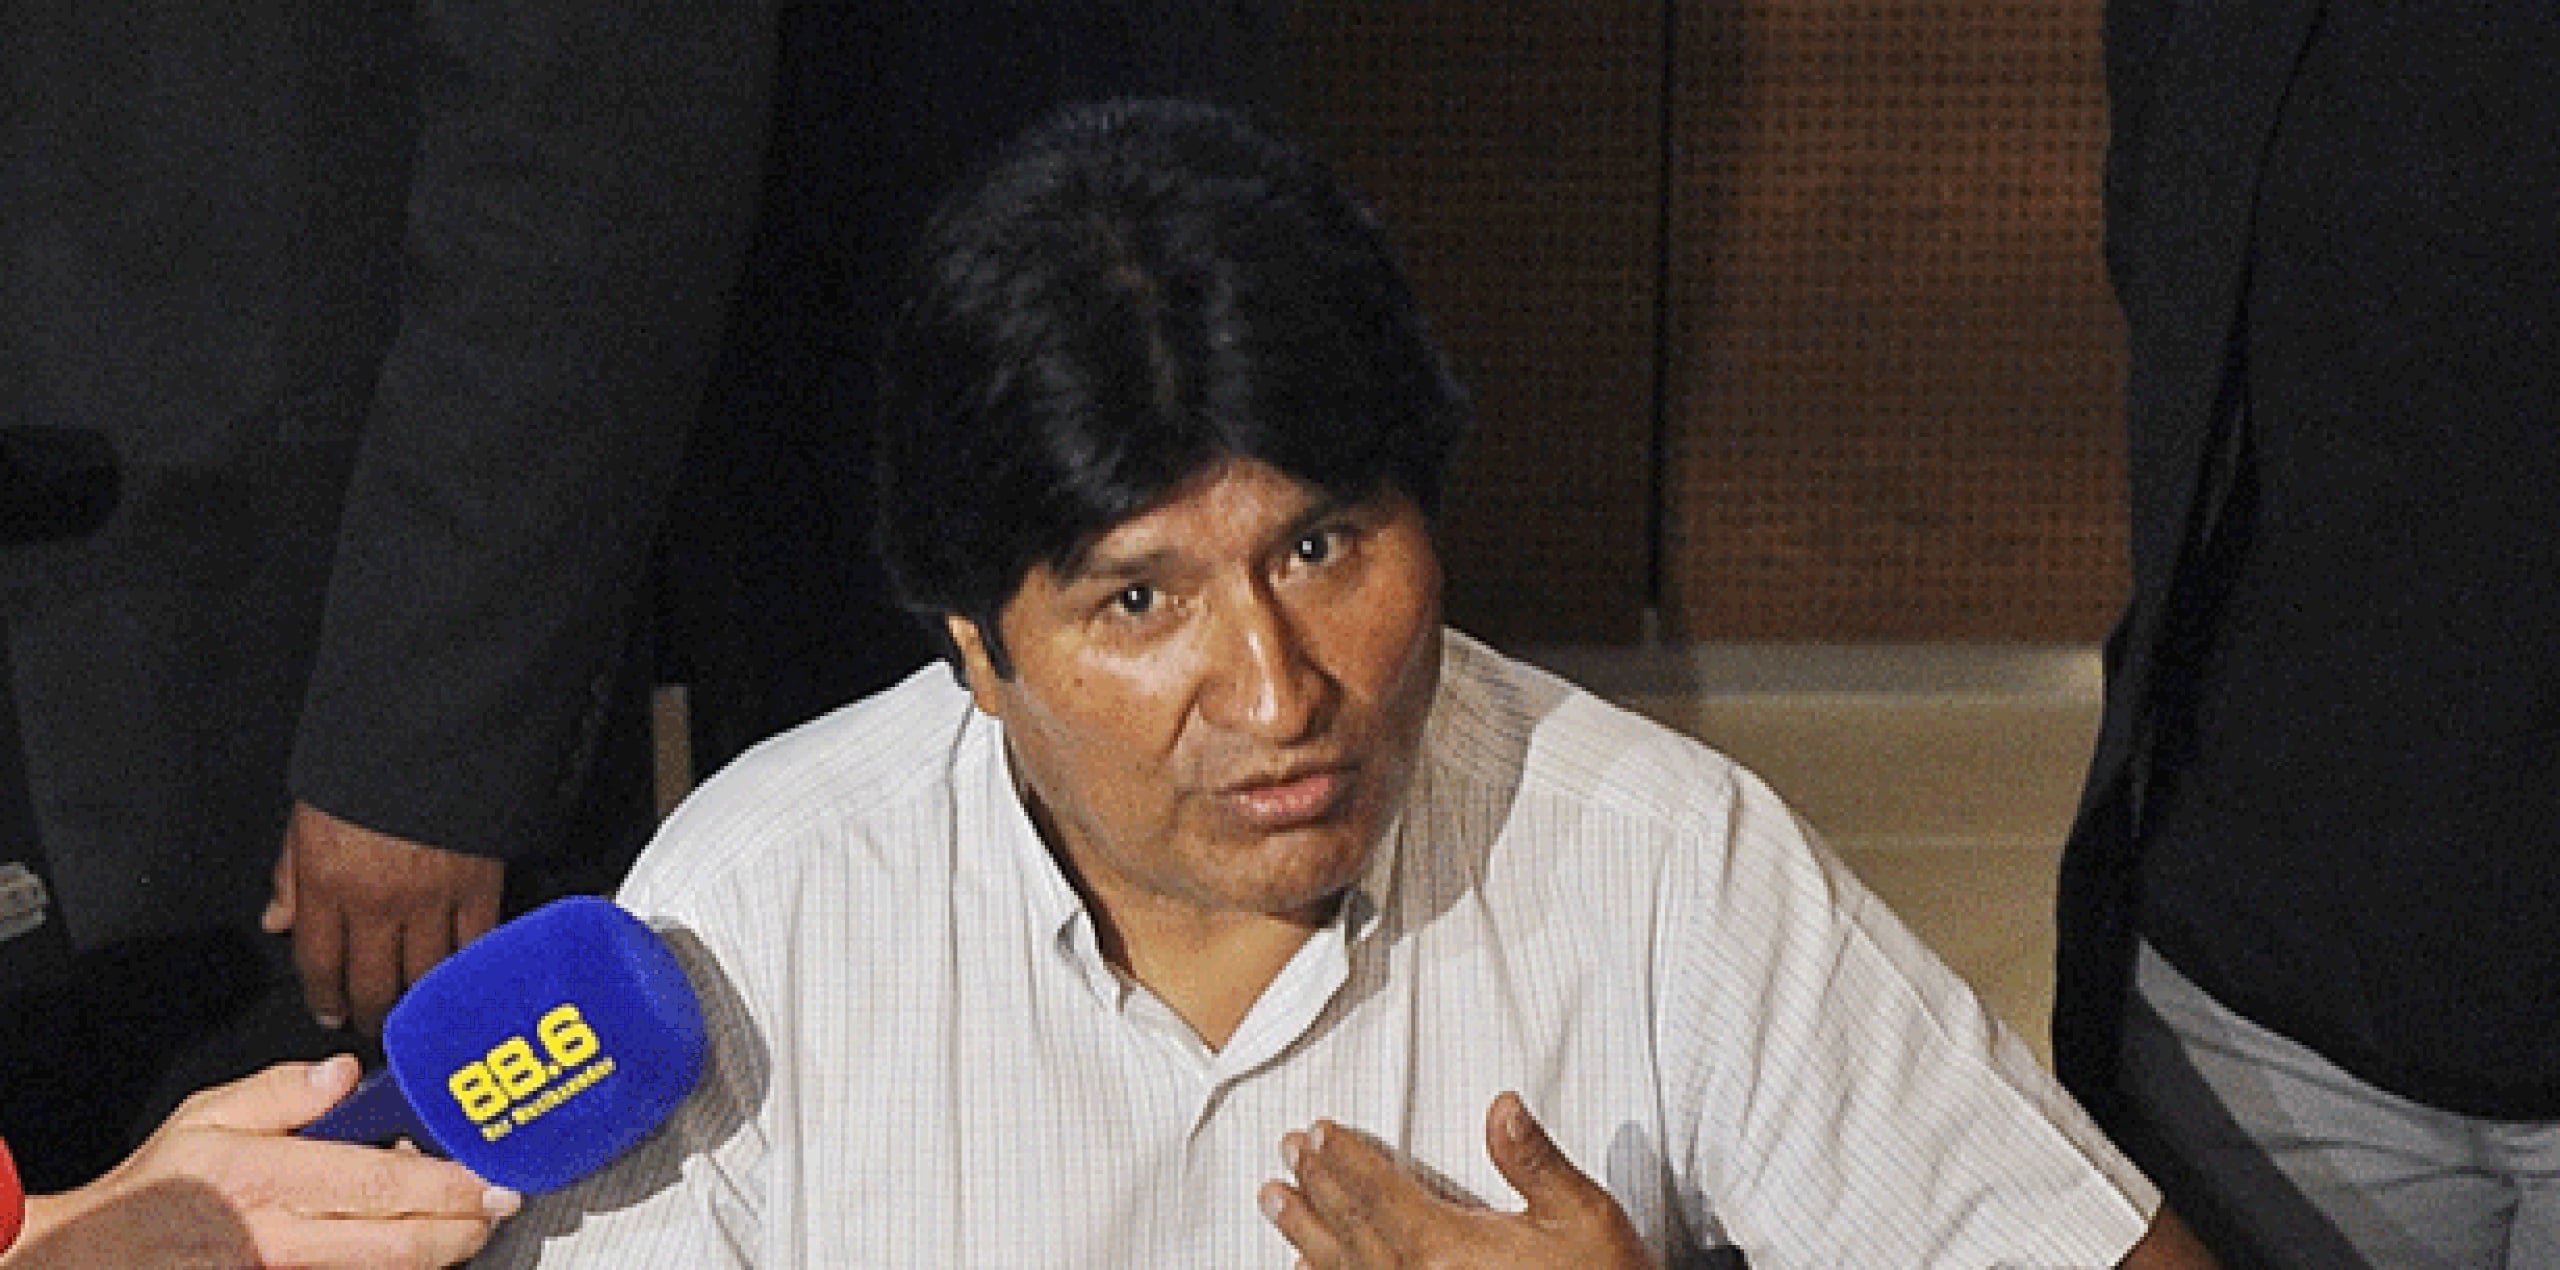 El gobernante boliviano ha acusado varias veces a Washington de promover y financiar conflictos internos en algunos países para intervenirlos y apropiarse de sus recursos naturales.(Archivo)